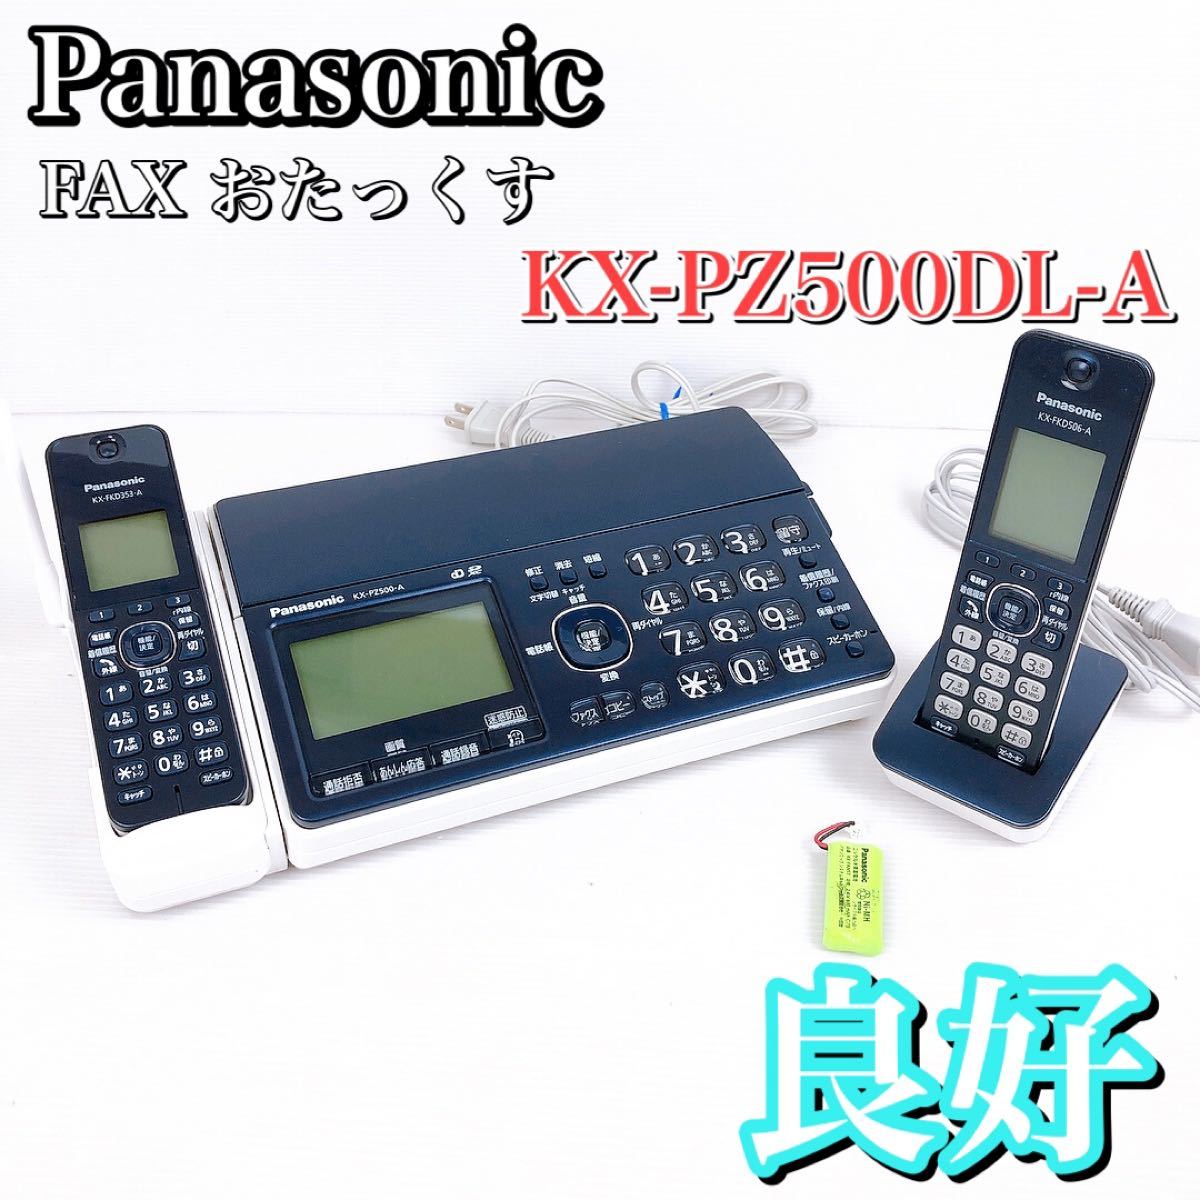 パナソニック FAX おたっくす KX-PZ500DL-A [ネイビーブルー